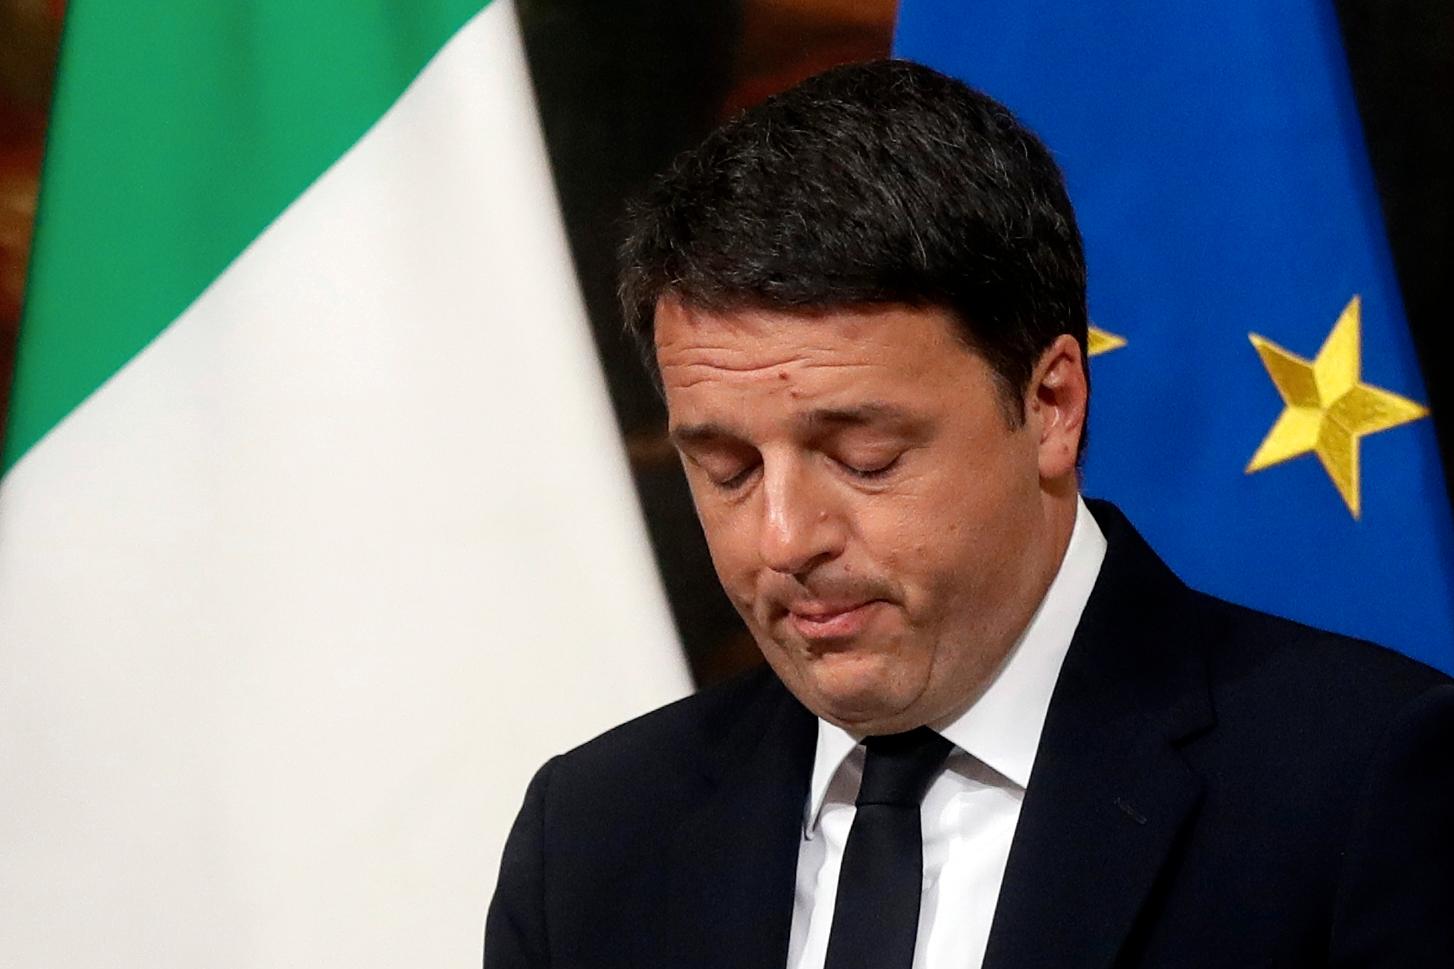 Il primo ministro italiano si dimette dopo la clamorosa sconfitta alle elezioni.  Ciò potrebbe aprire la strada ai populisti.